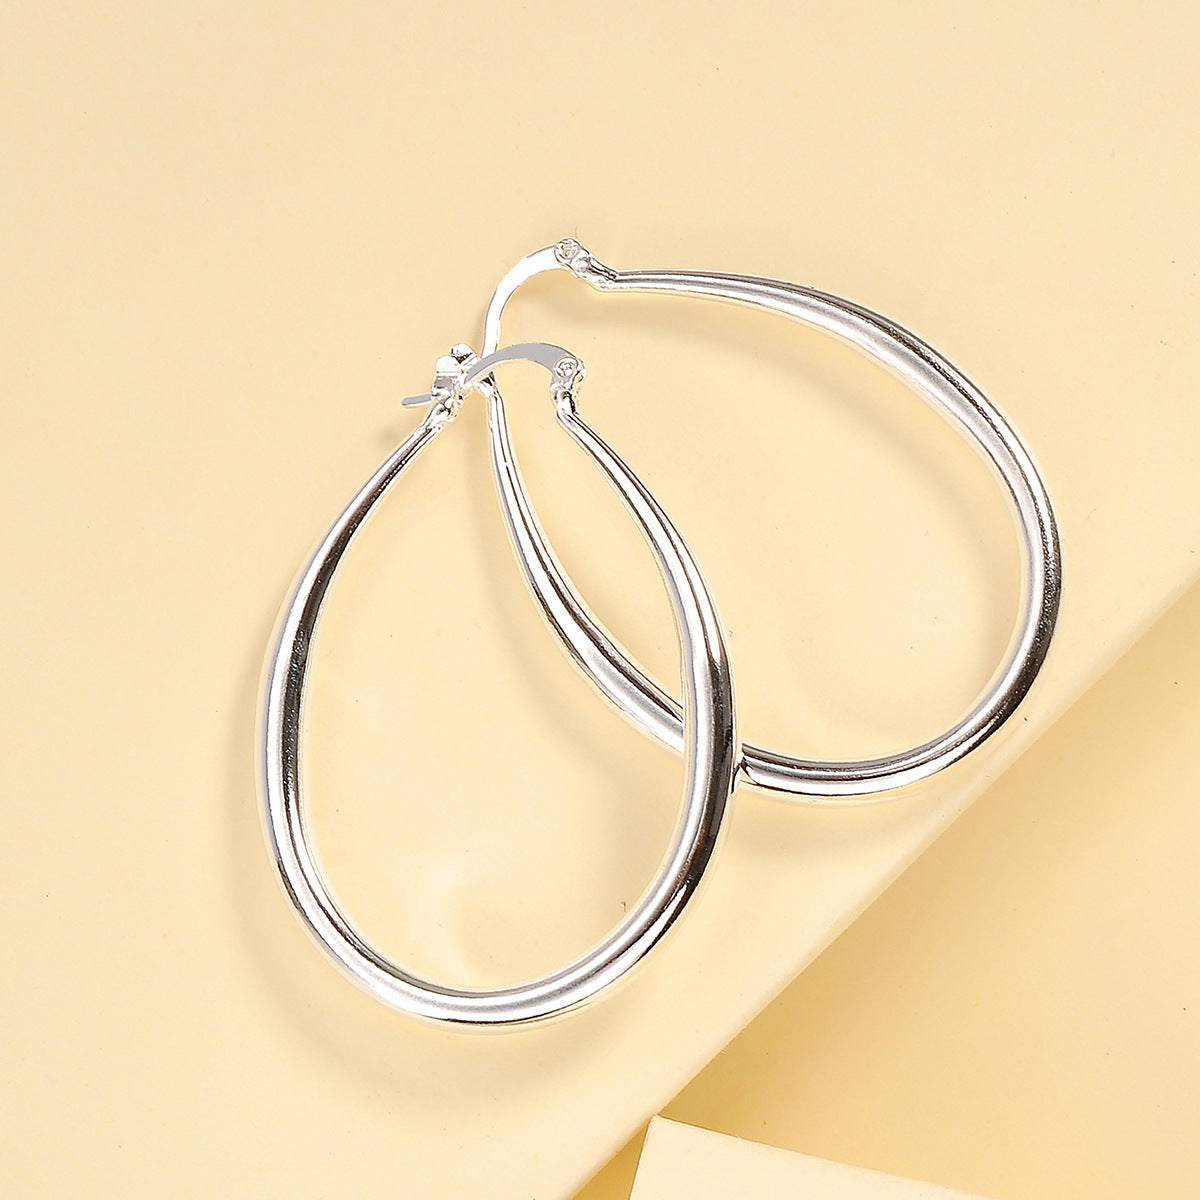 Geometric Oval Earrings For Women